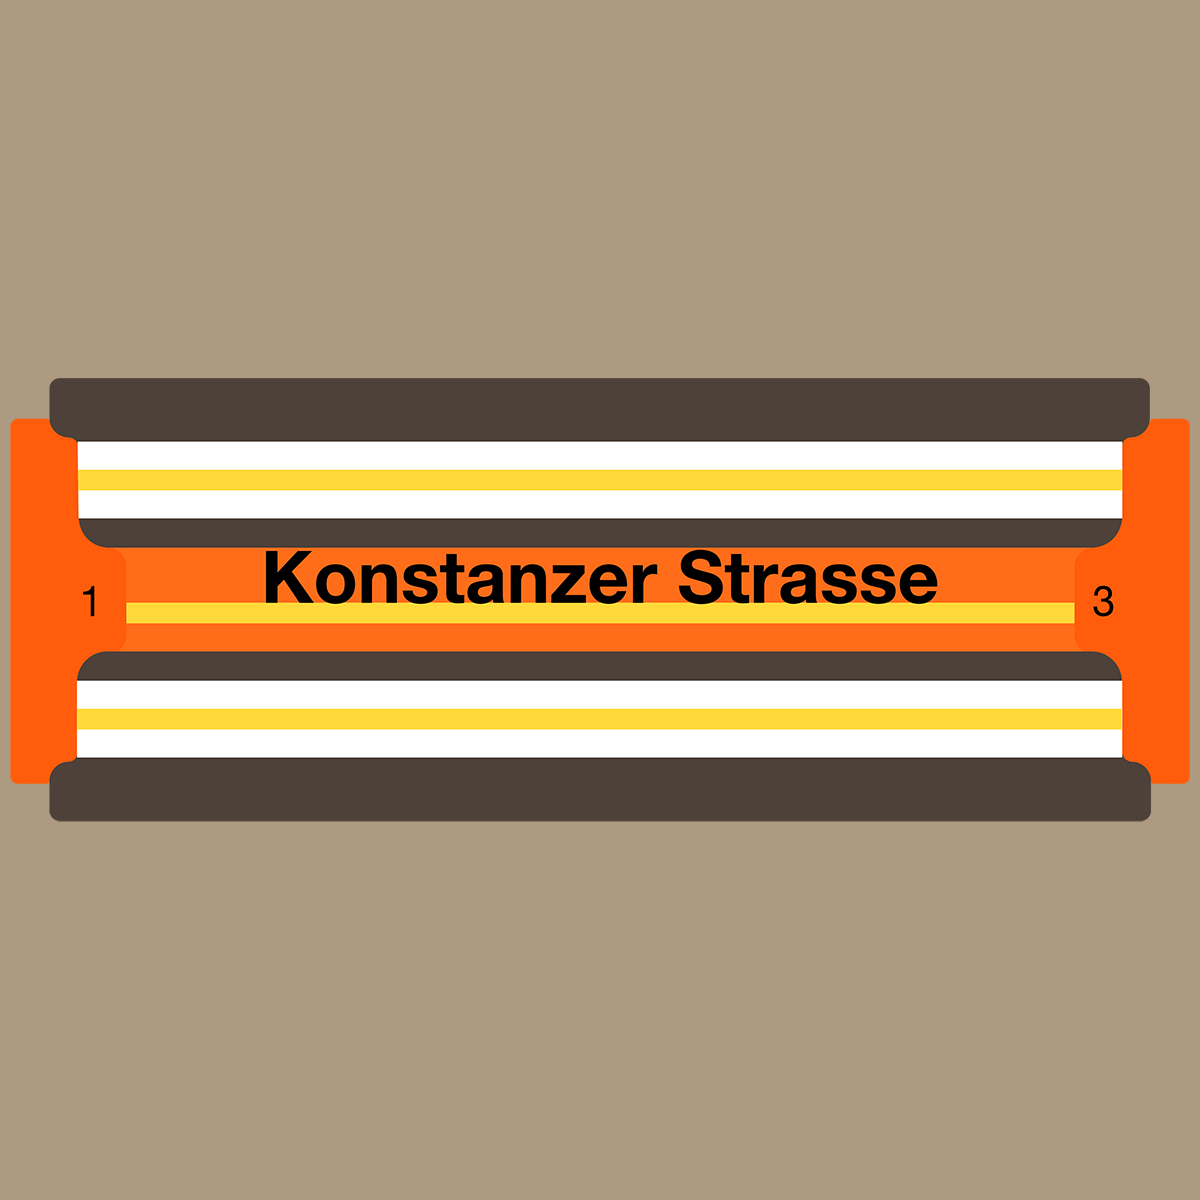 Konstanzer Strasse